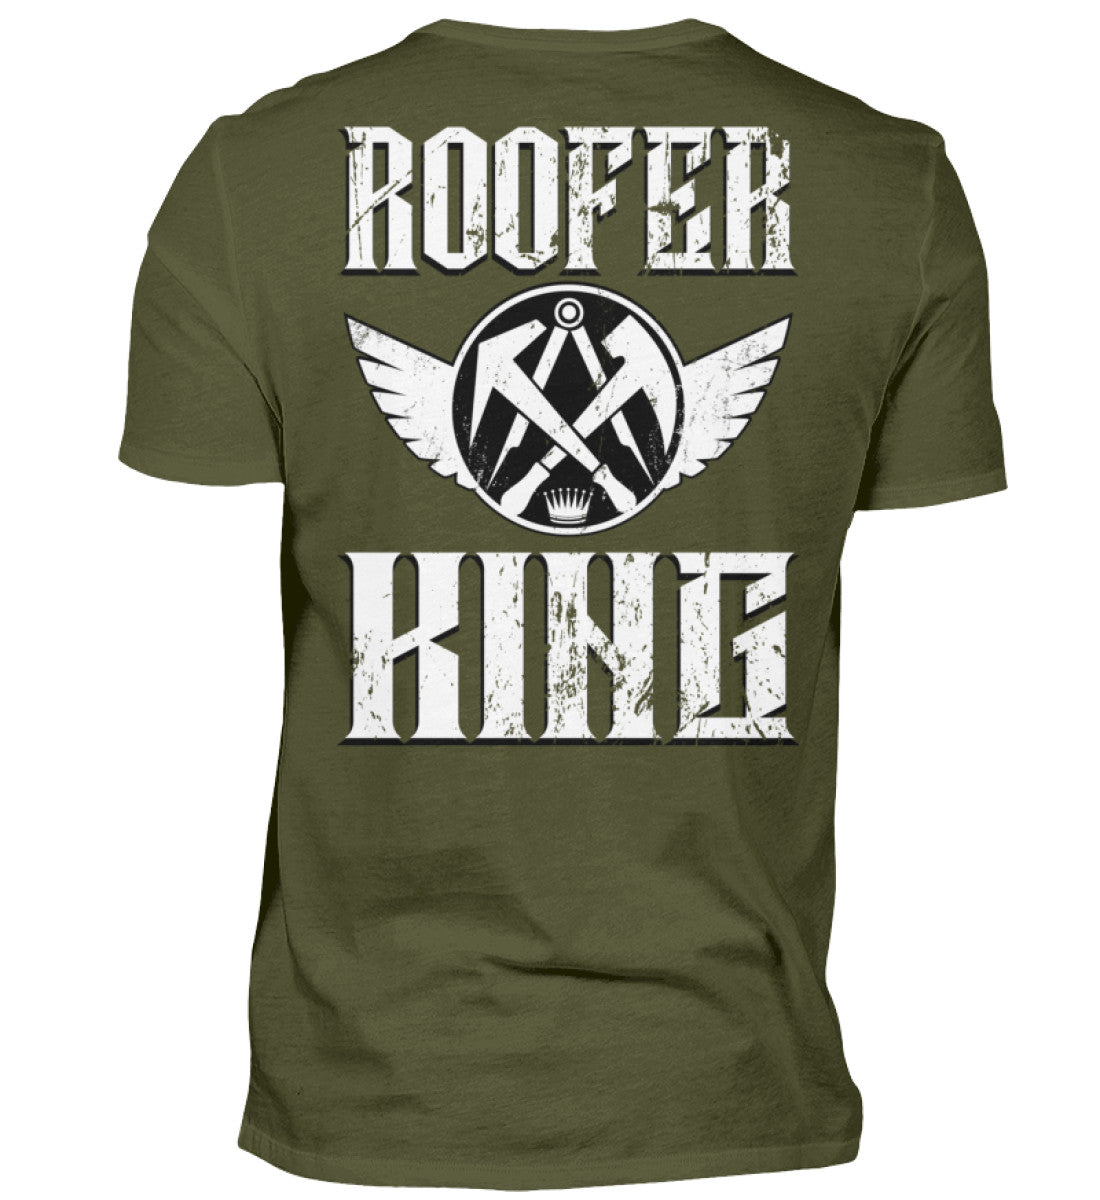 Dachdecker T-Shirt / Rooferking €24.95 Rooferking